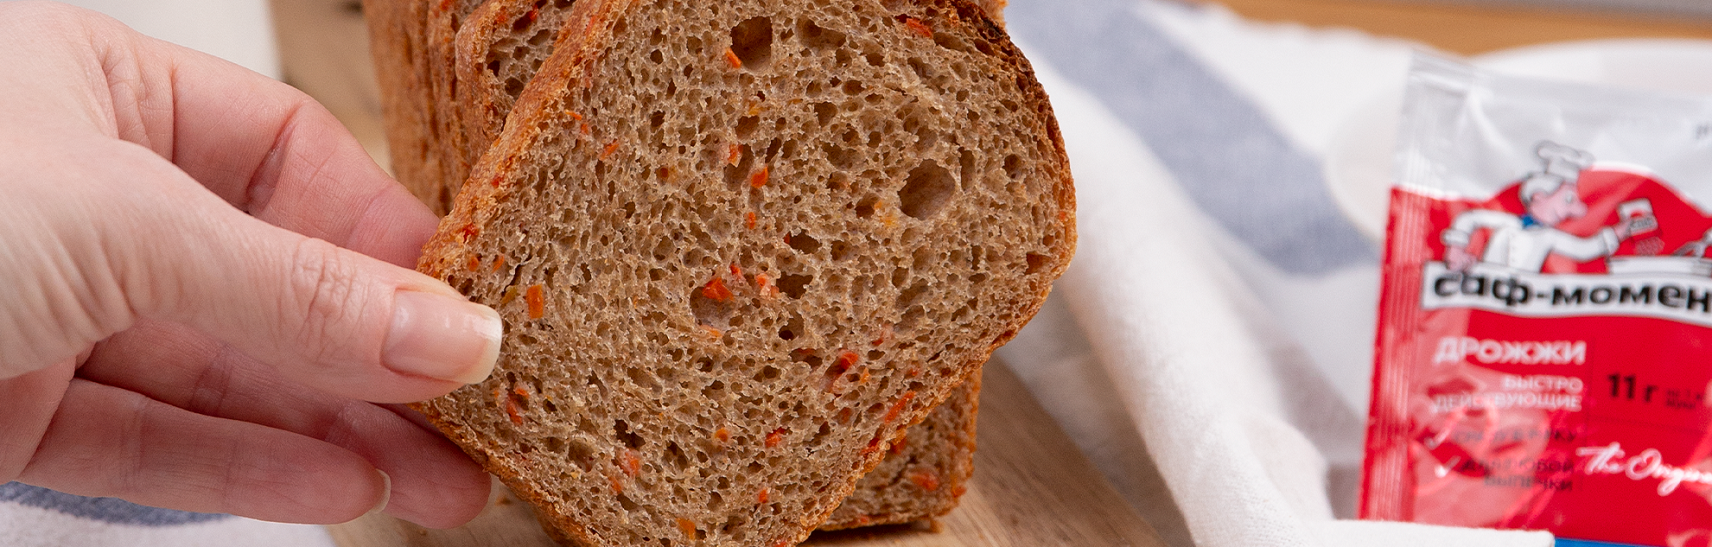 Постный полбяной хлеб